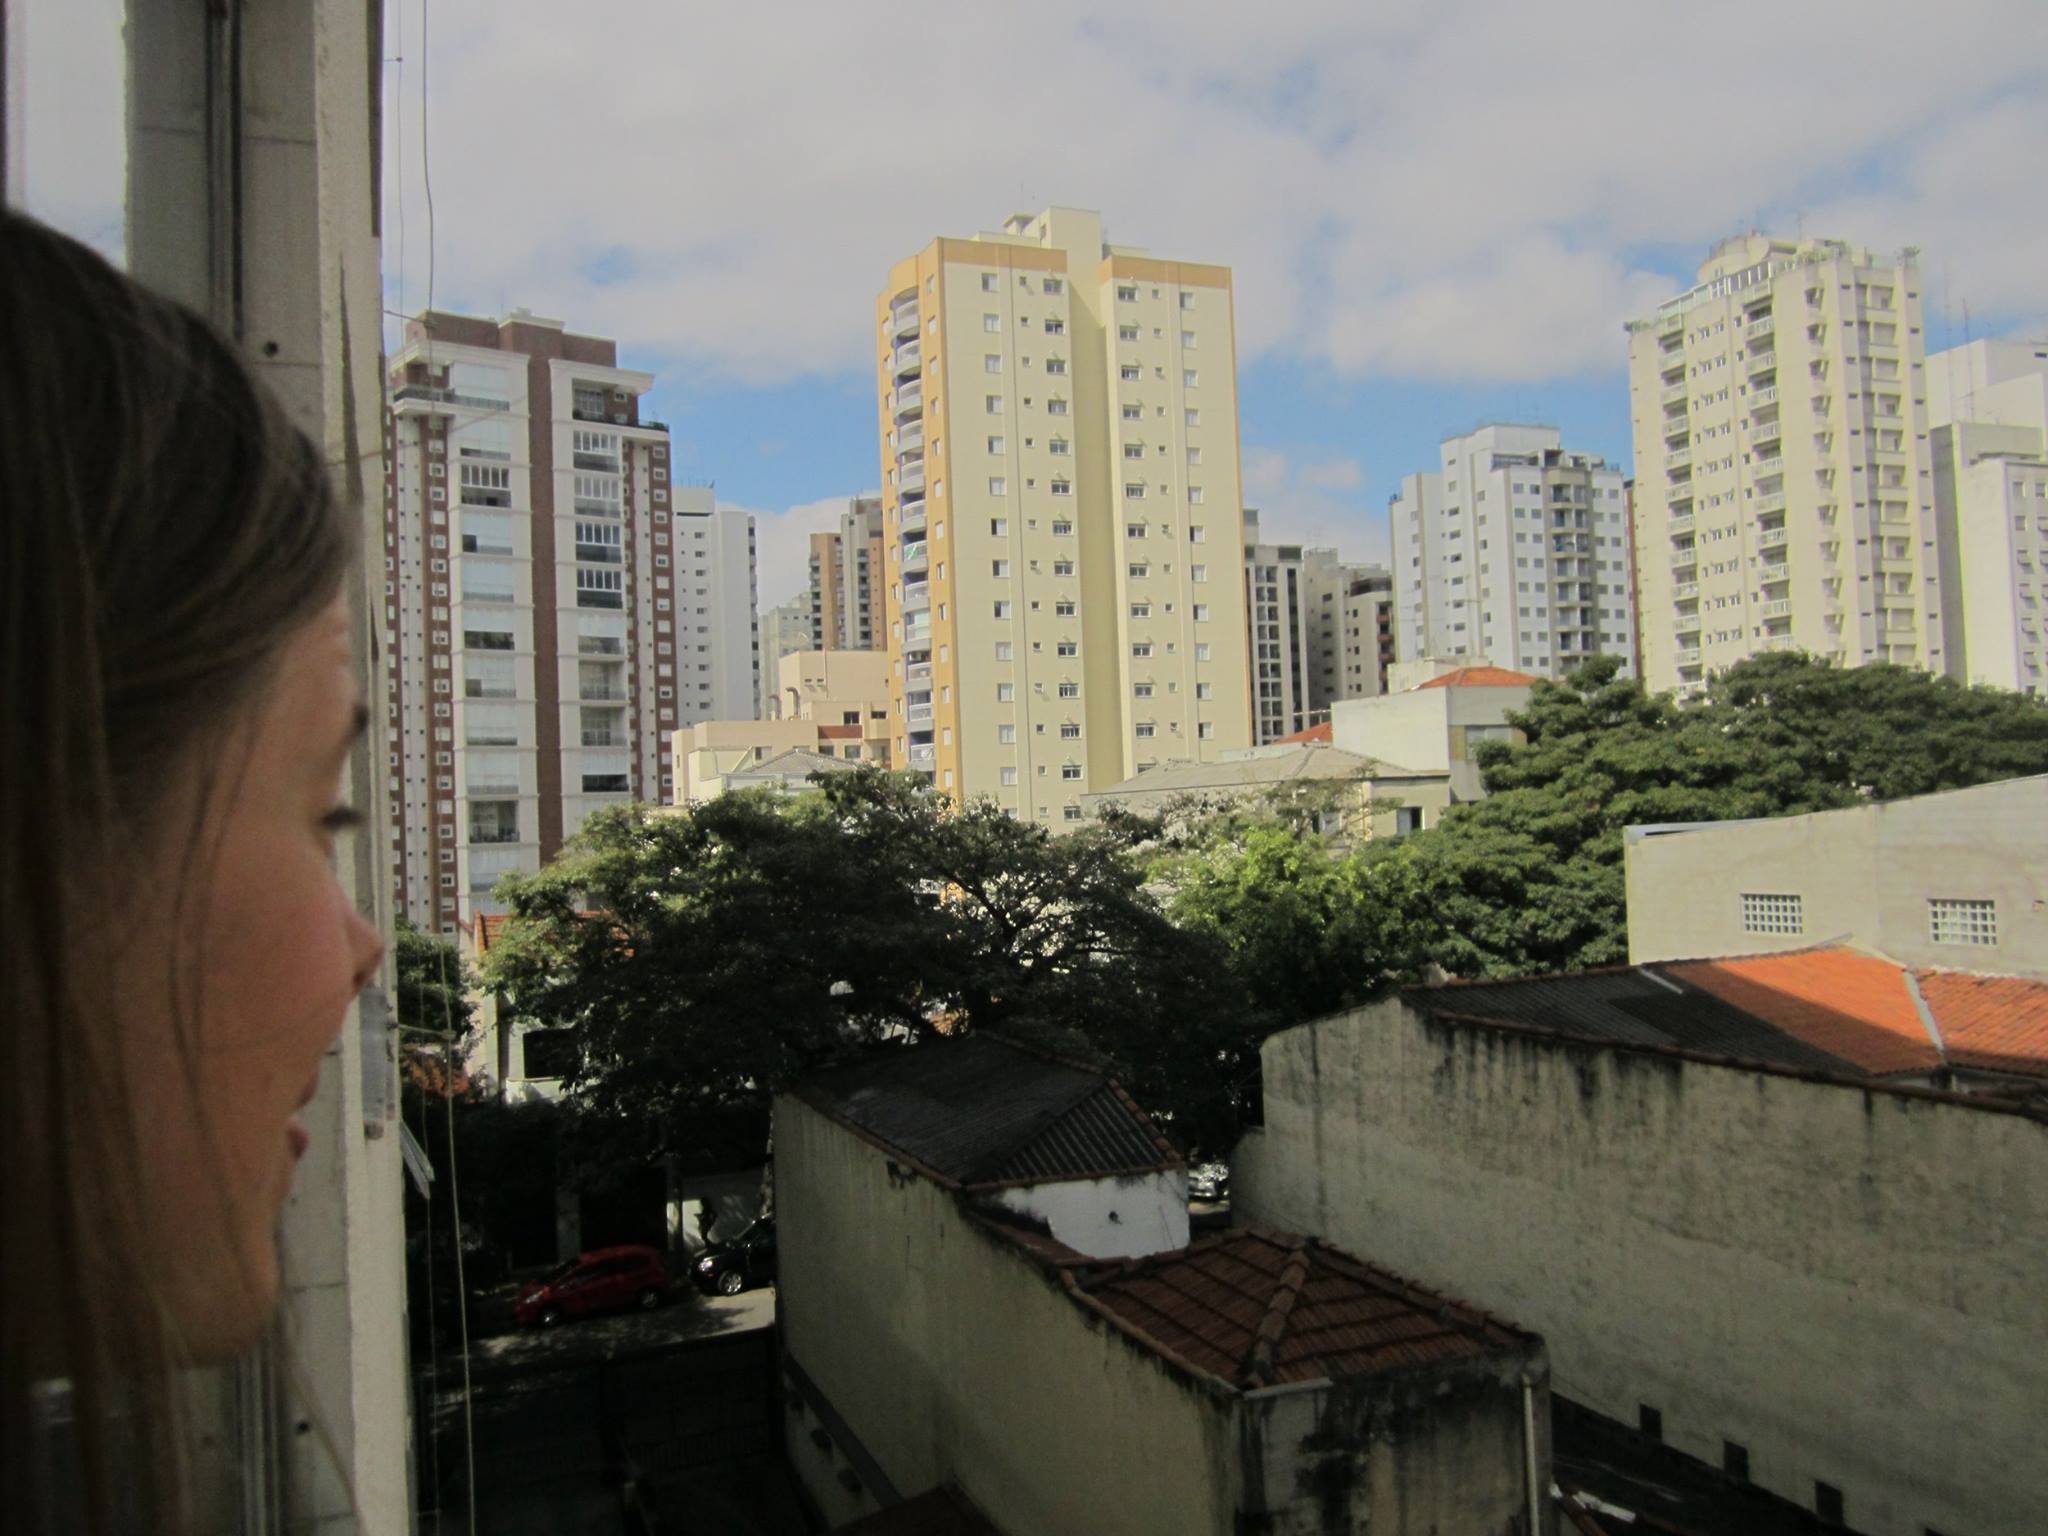 São Paulo by